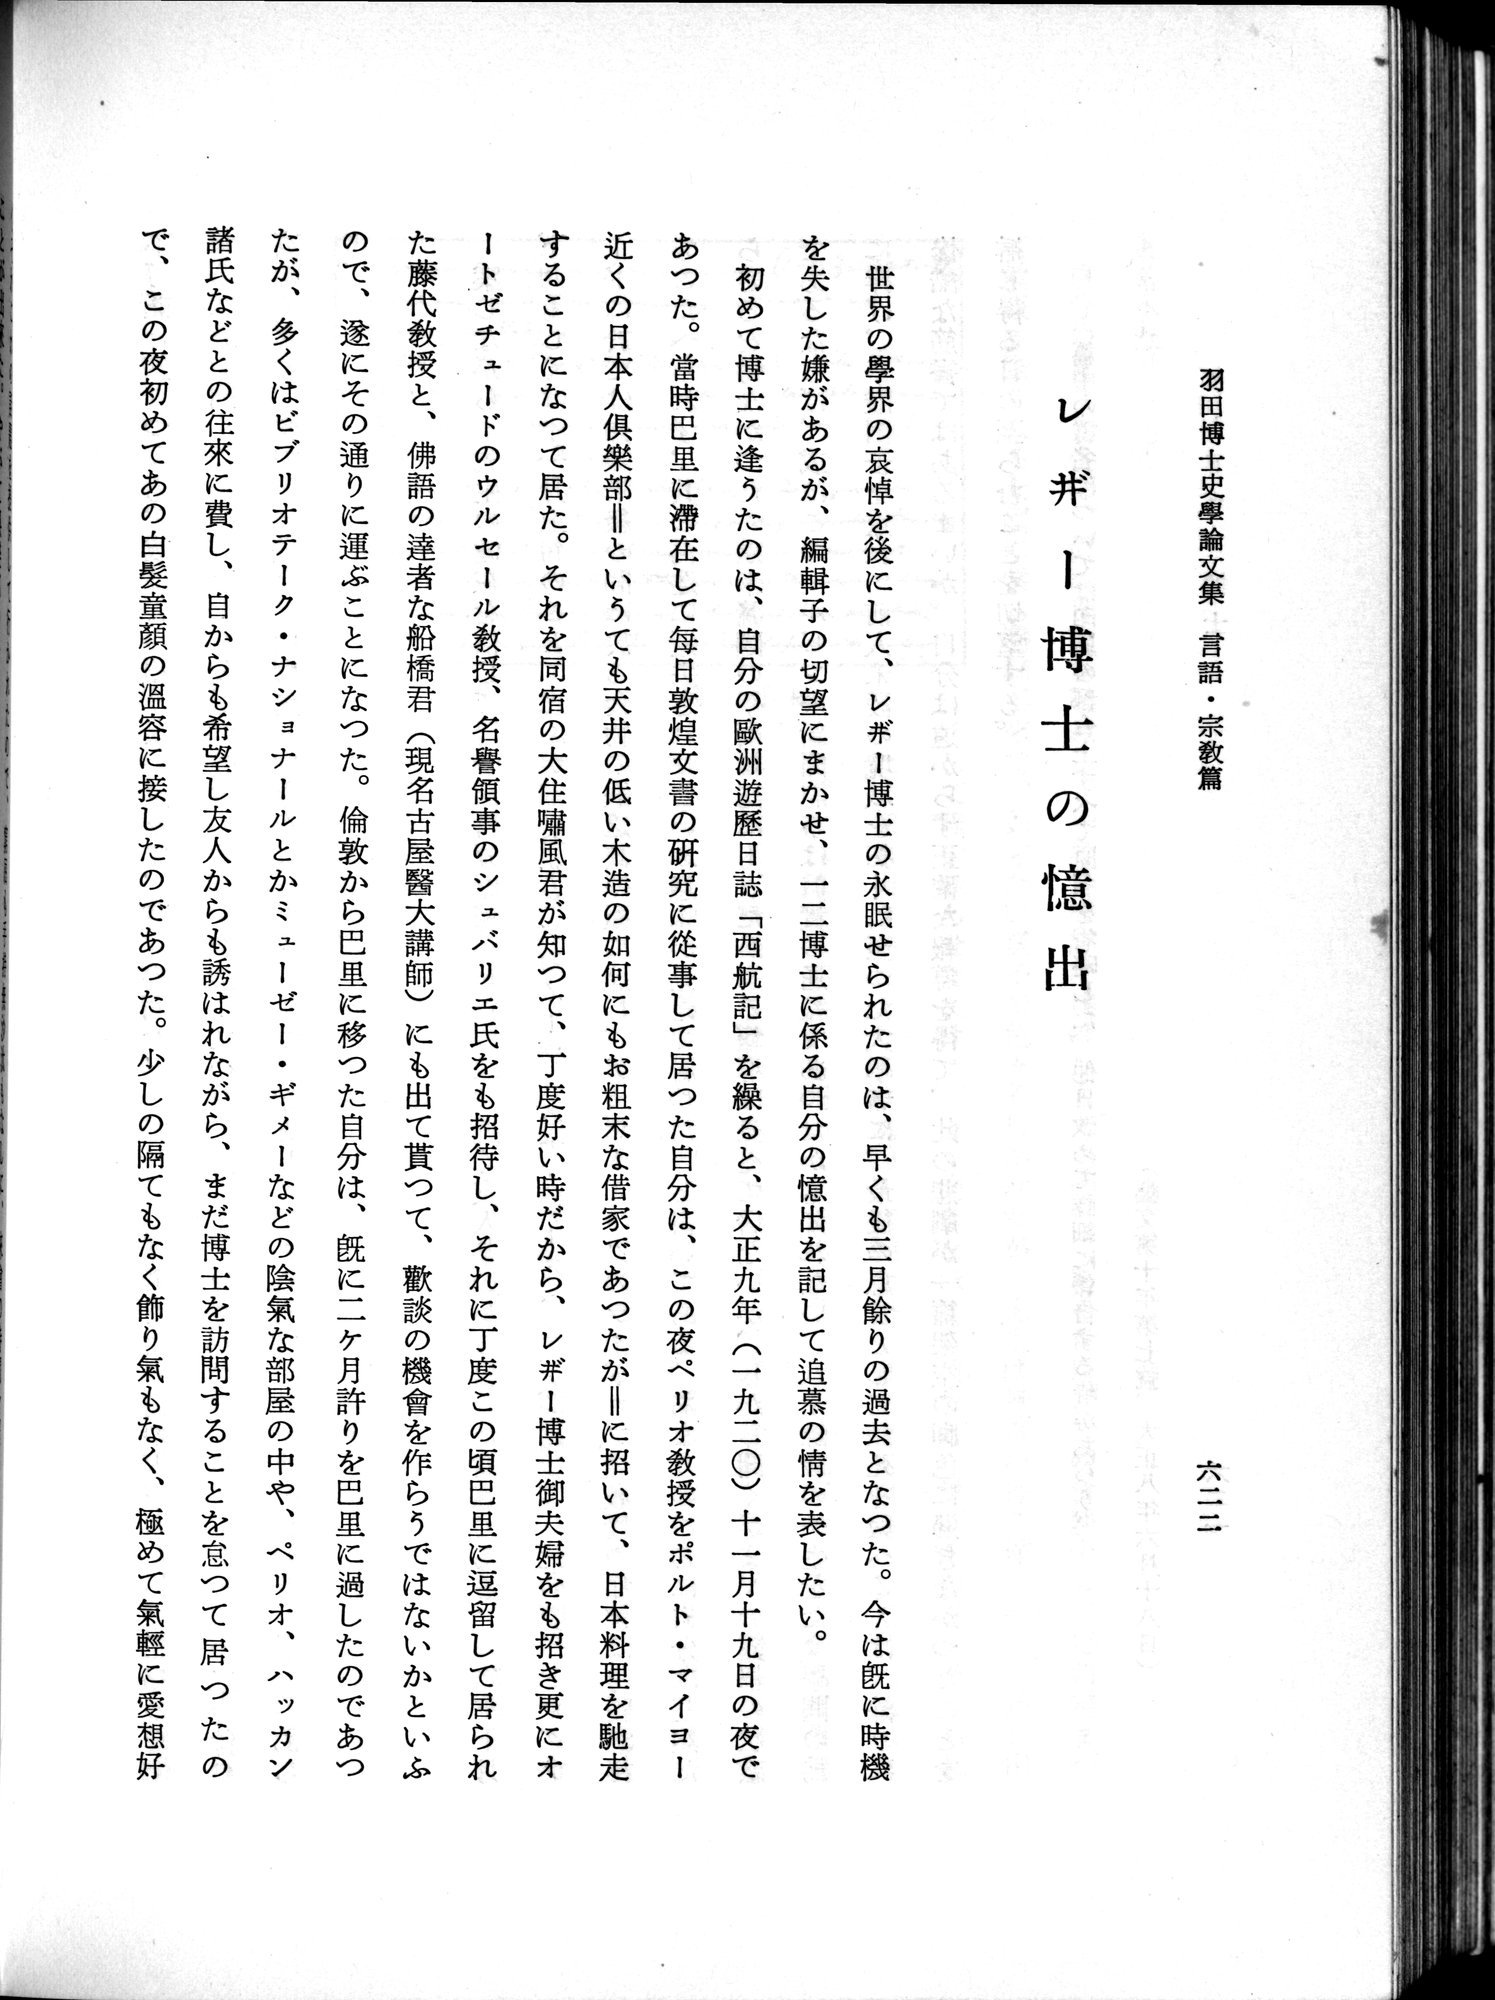 羽田博士史学論文集 : vol.2 / Page 686 (Grayscale High Resolution Image)